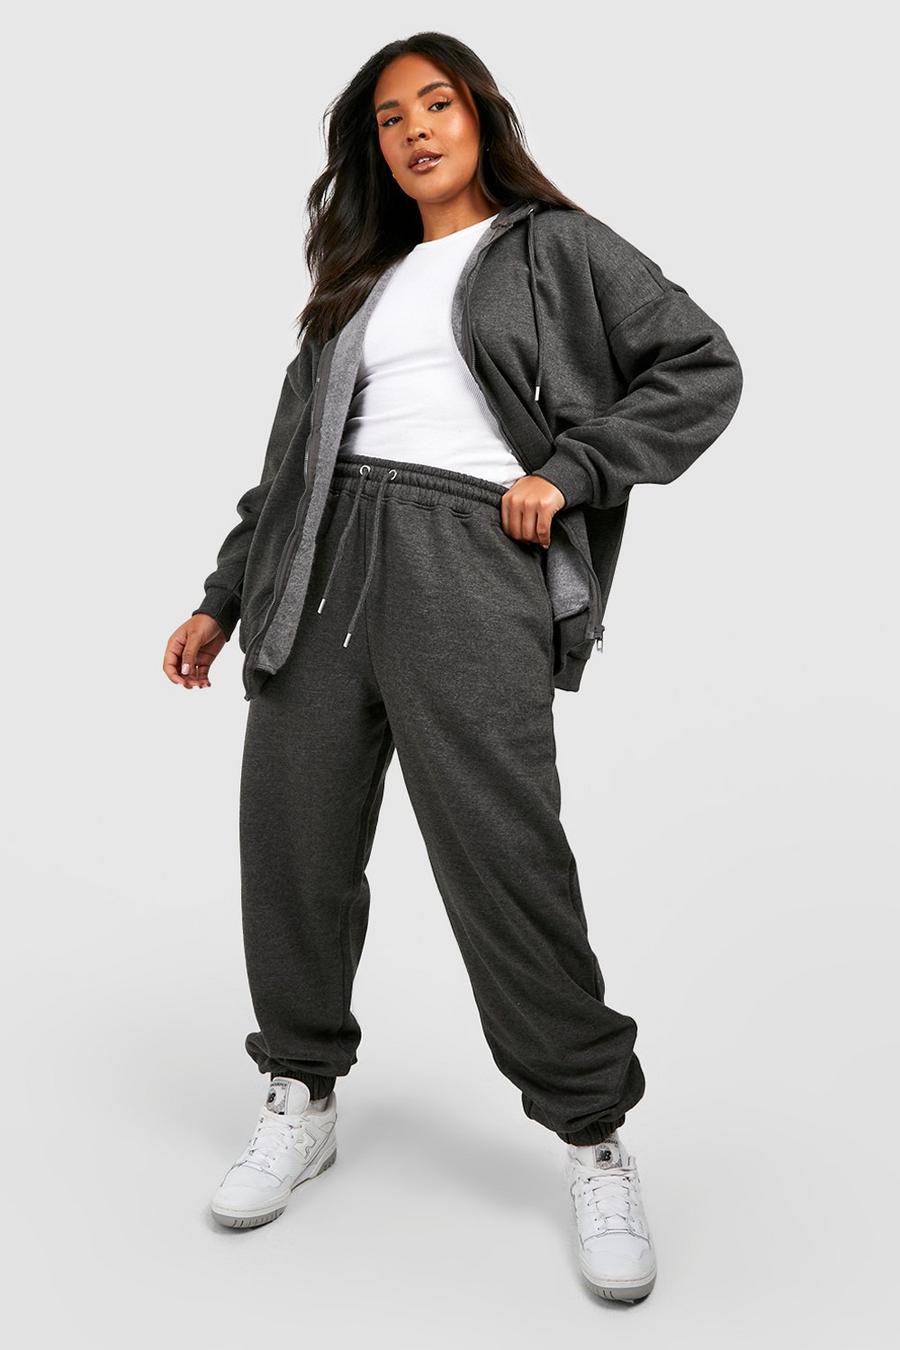 Pantaloni tuta Plus Size Basic in fibre riciclate con polsini alle caviglie, Charcoal grey